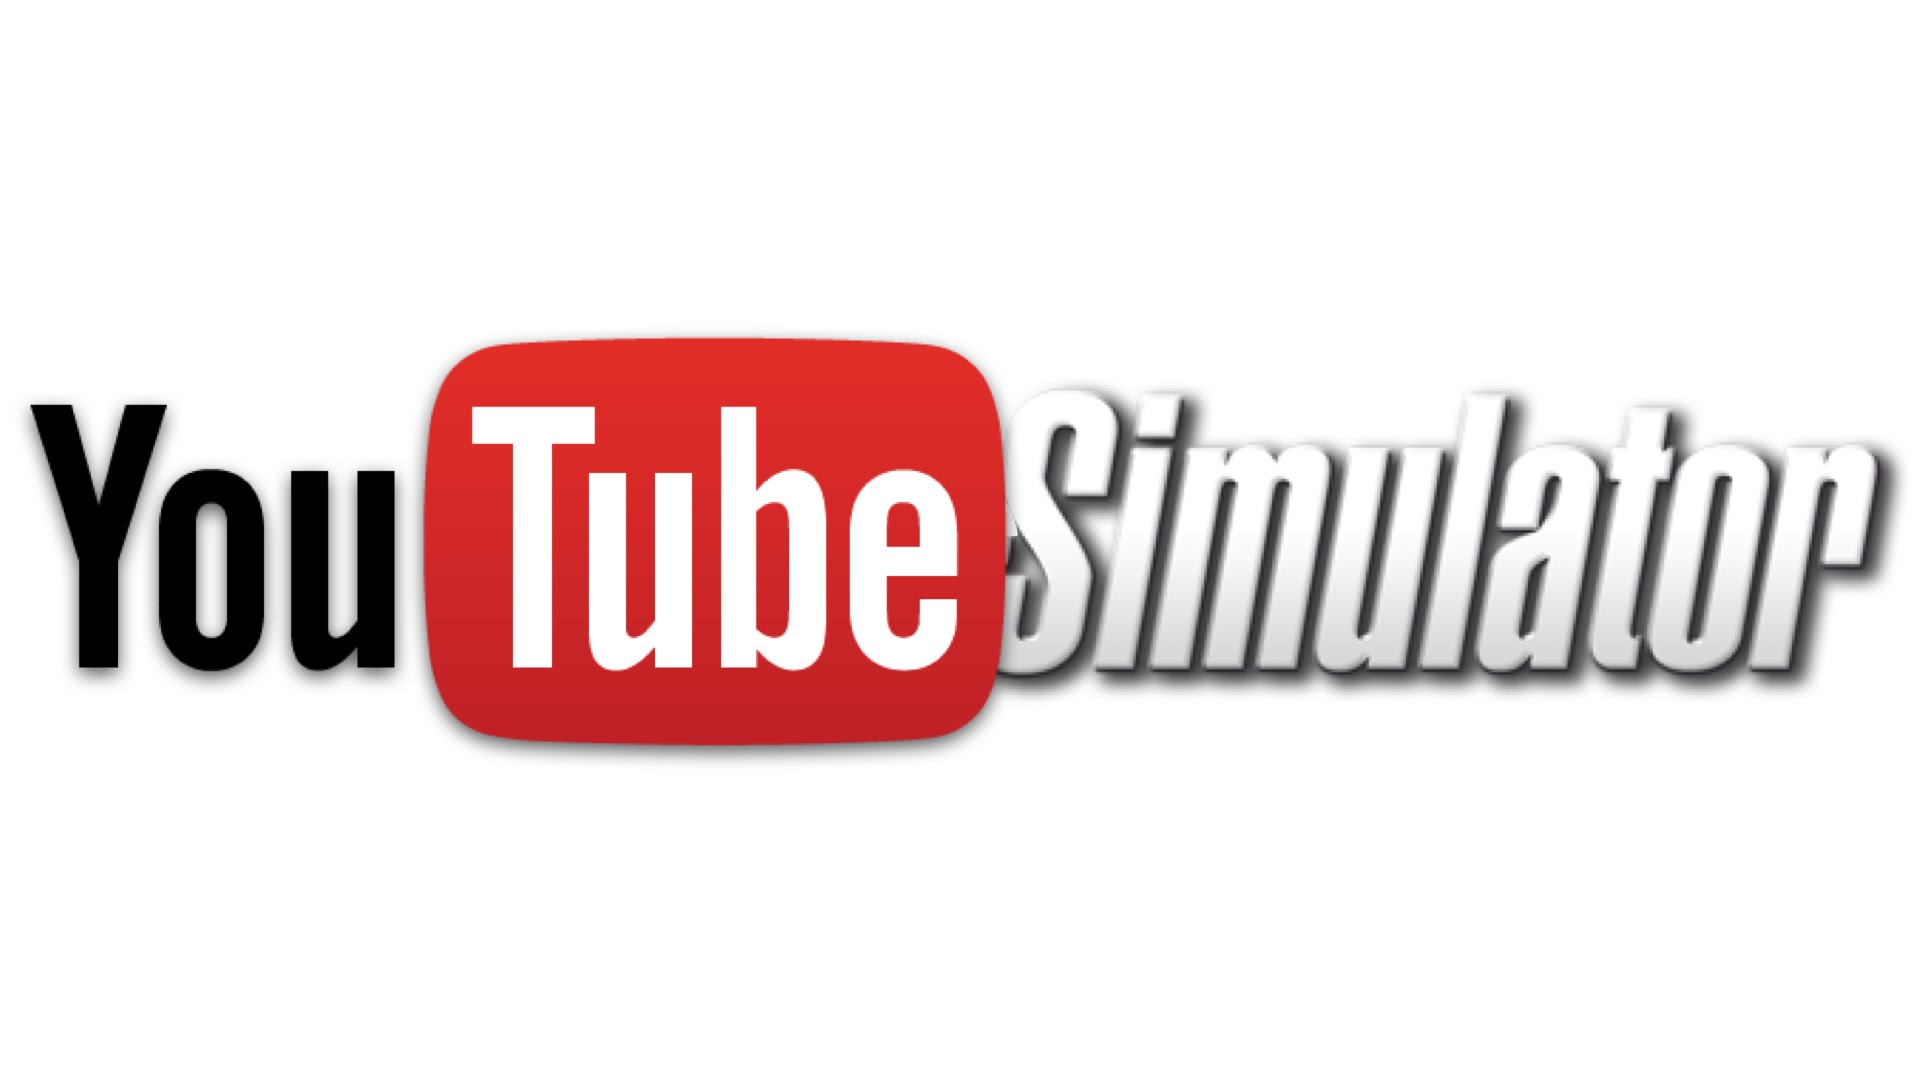 Achat vue Youtube : Les petites astuces de l'expert de Youtube pour acquérir une grande visibilité rapidement